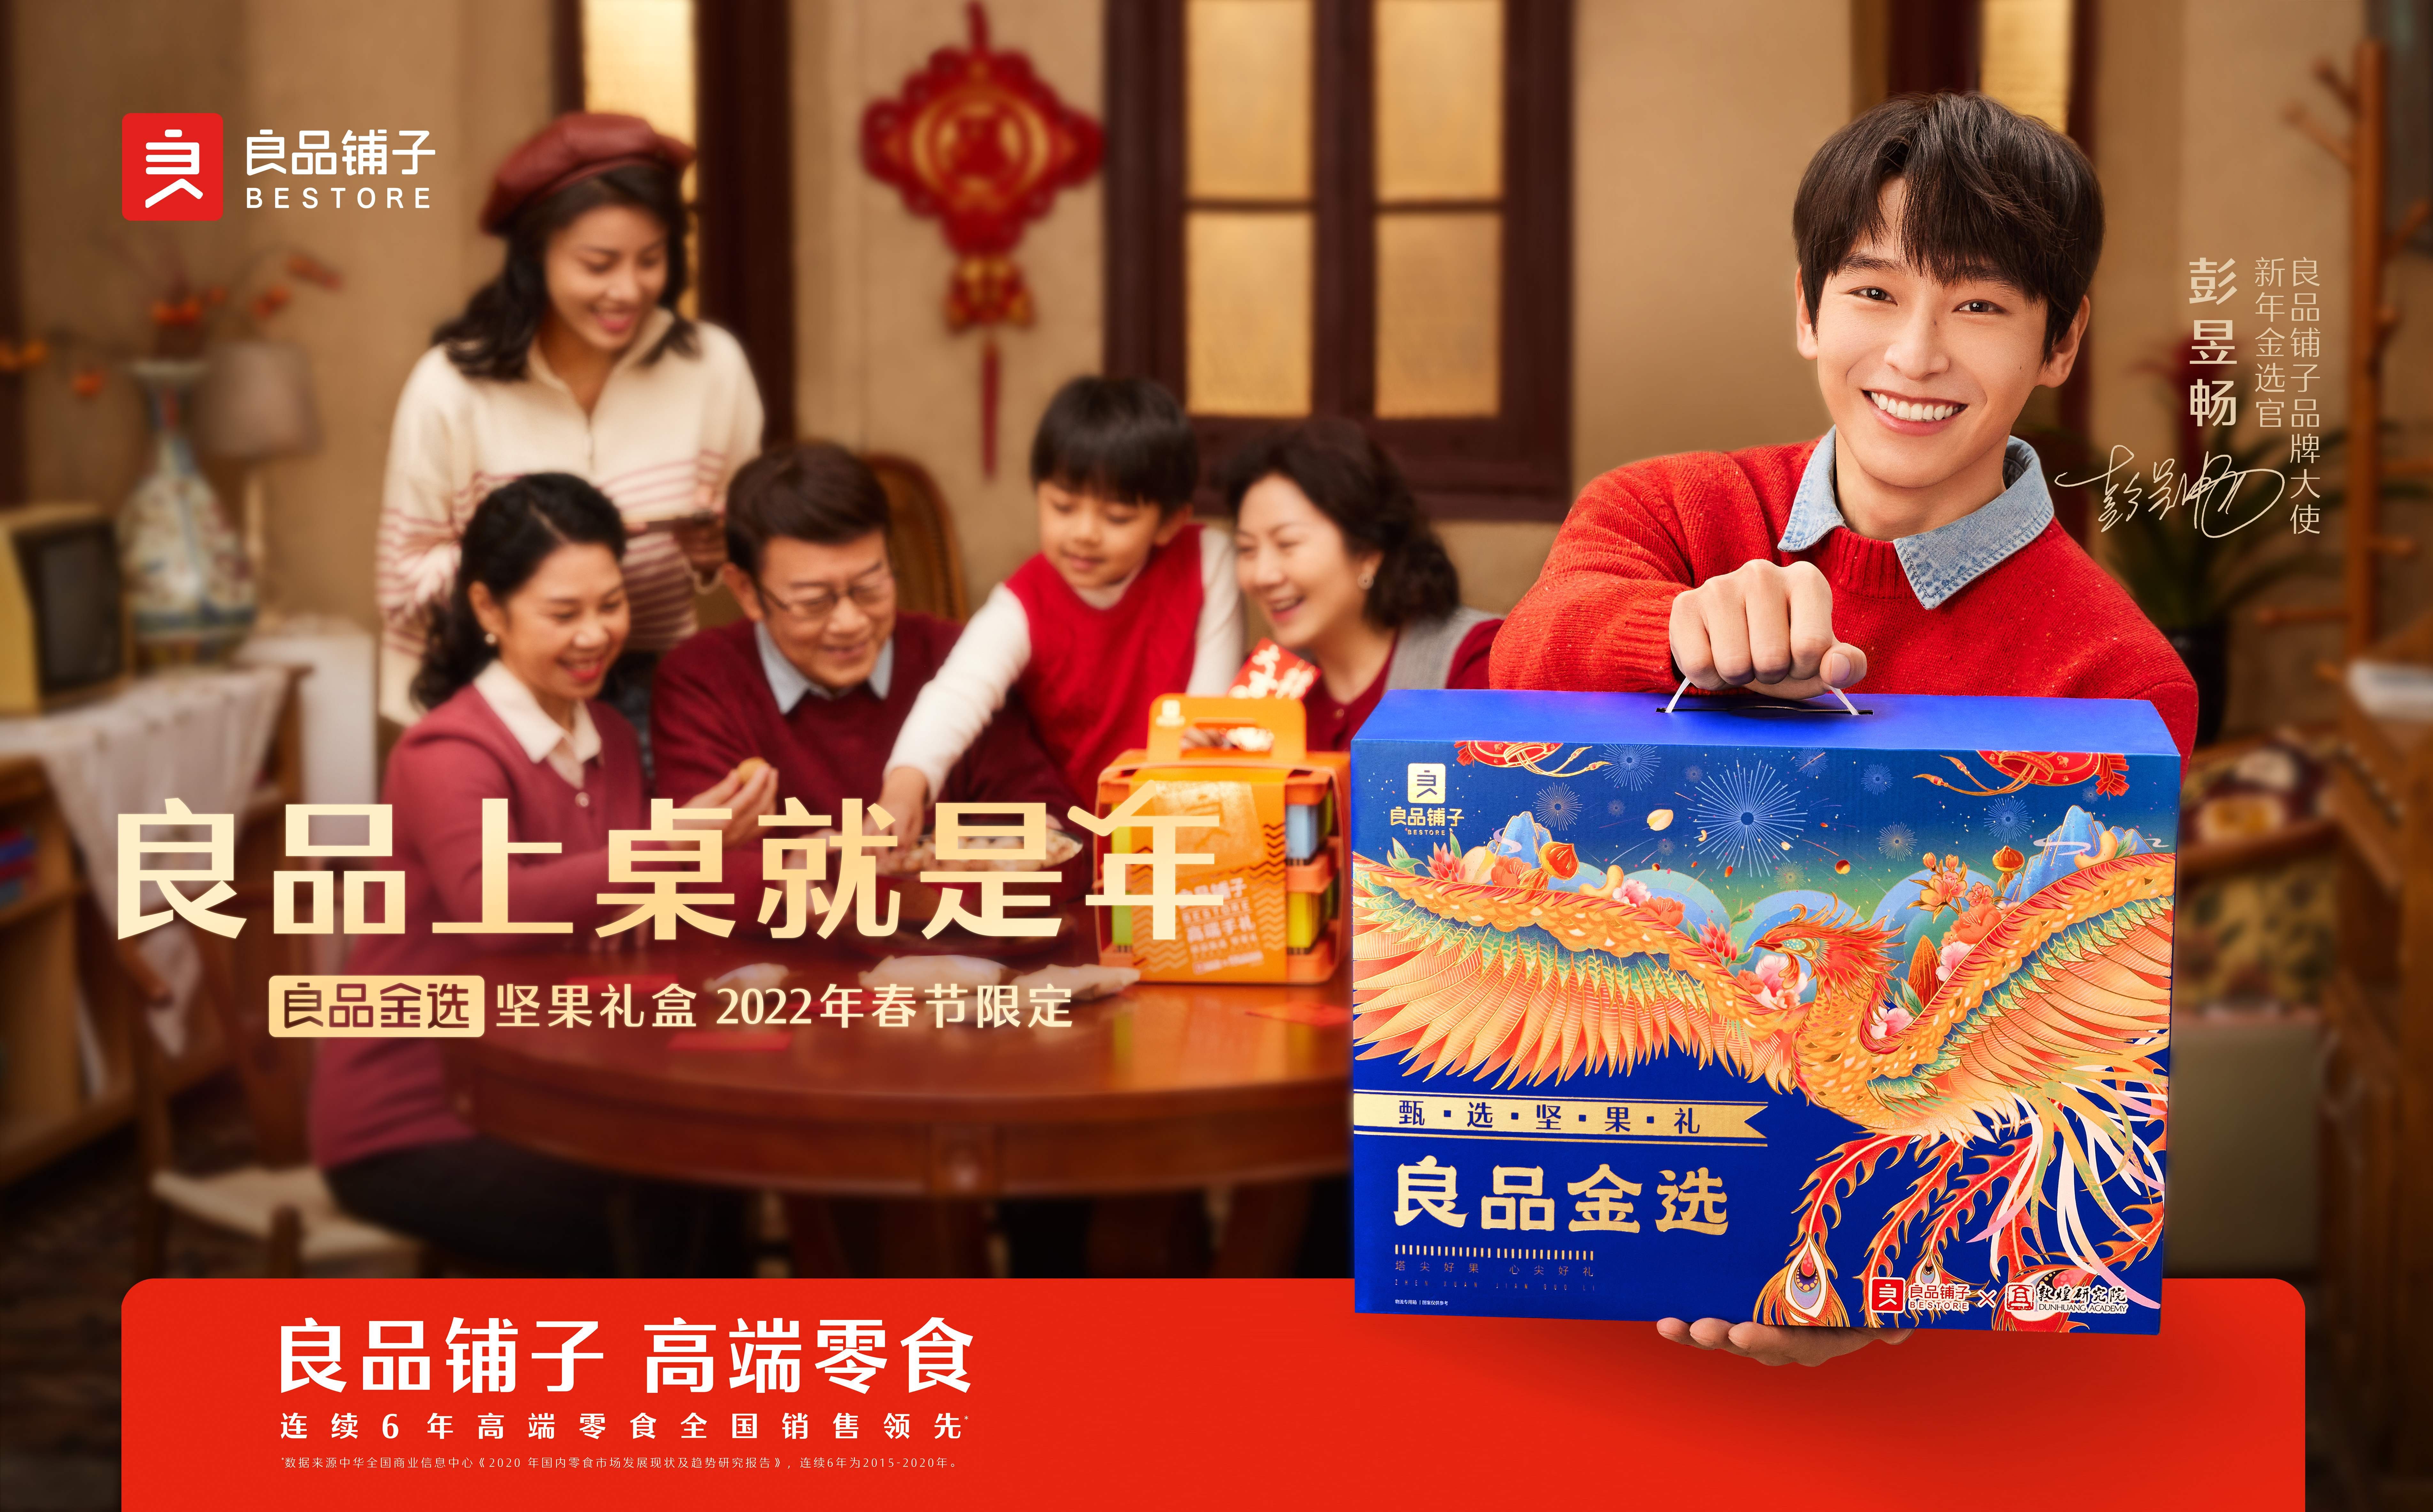 新年礼盒“金选”而来，《小敏家》携手高端零食良品铺子演绎美好品质中国年